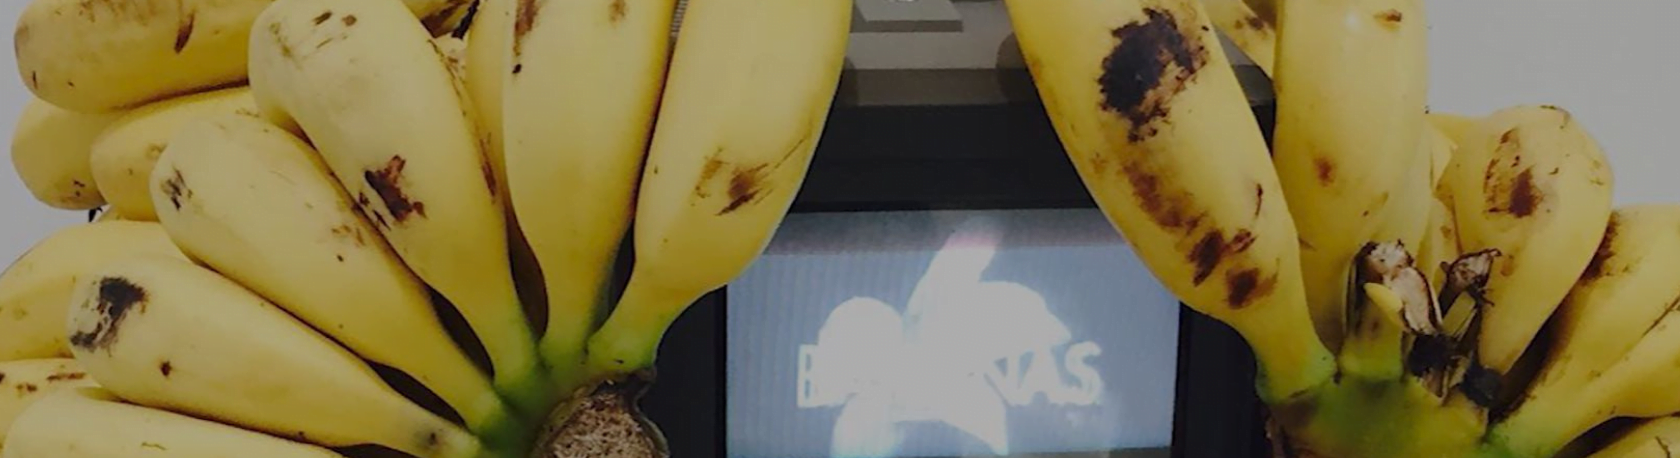 Virtual Exhibition: Banana Craze - Easy Español